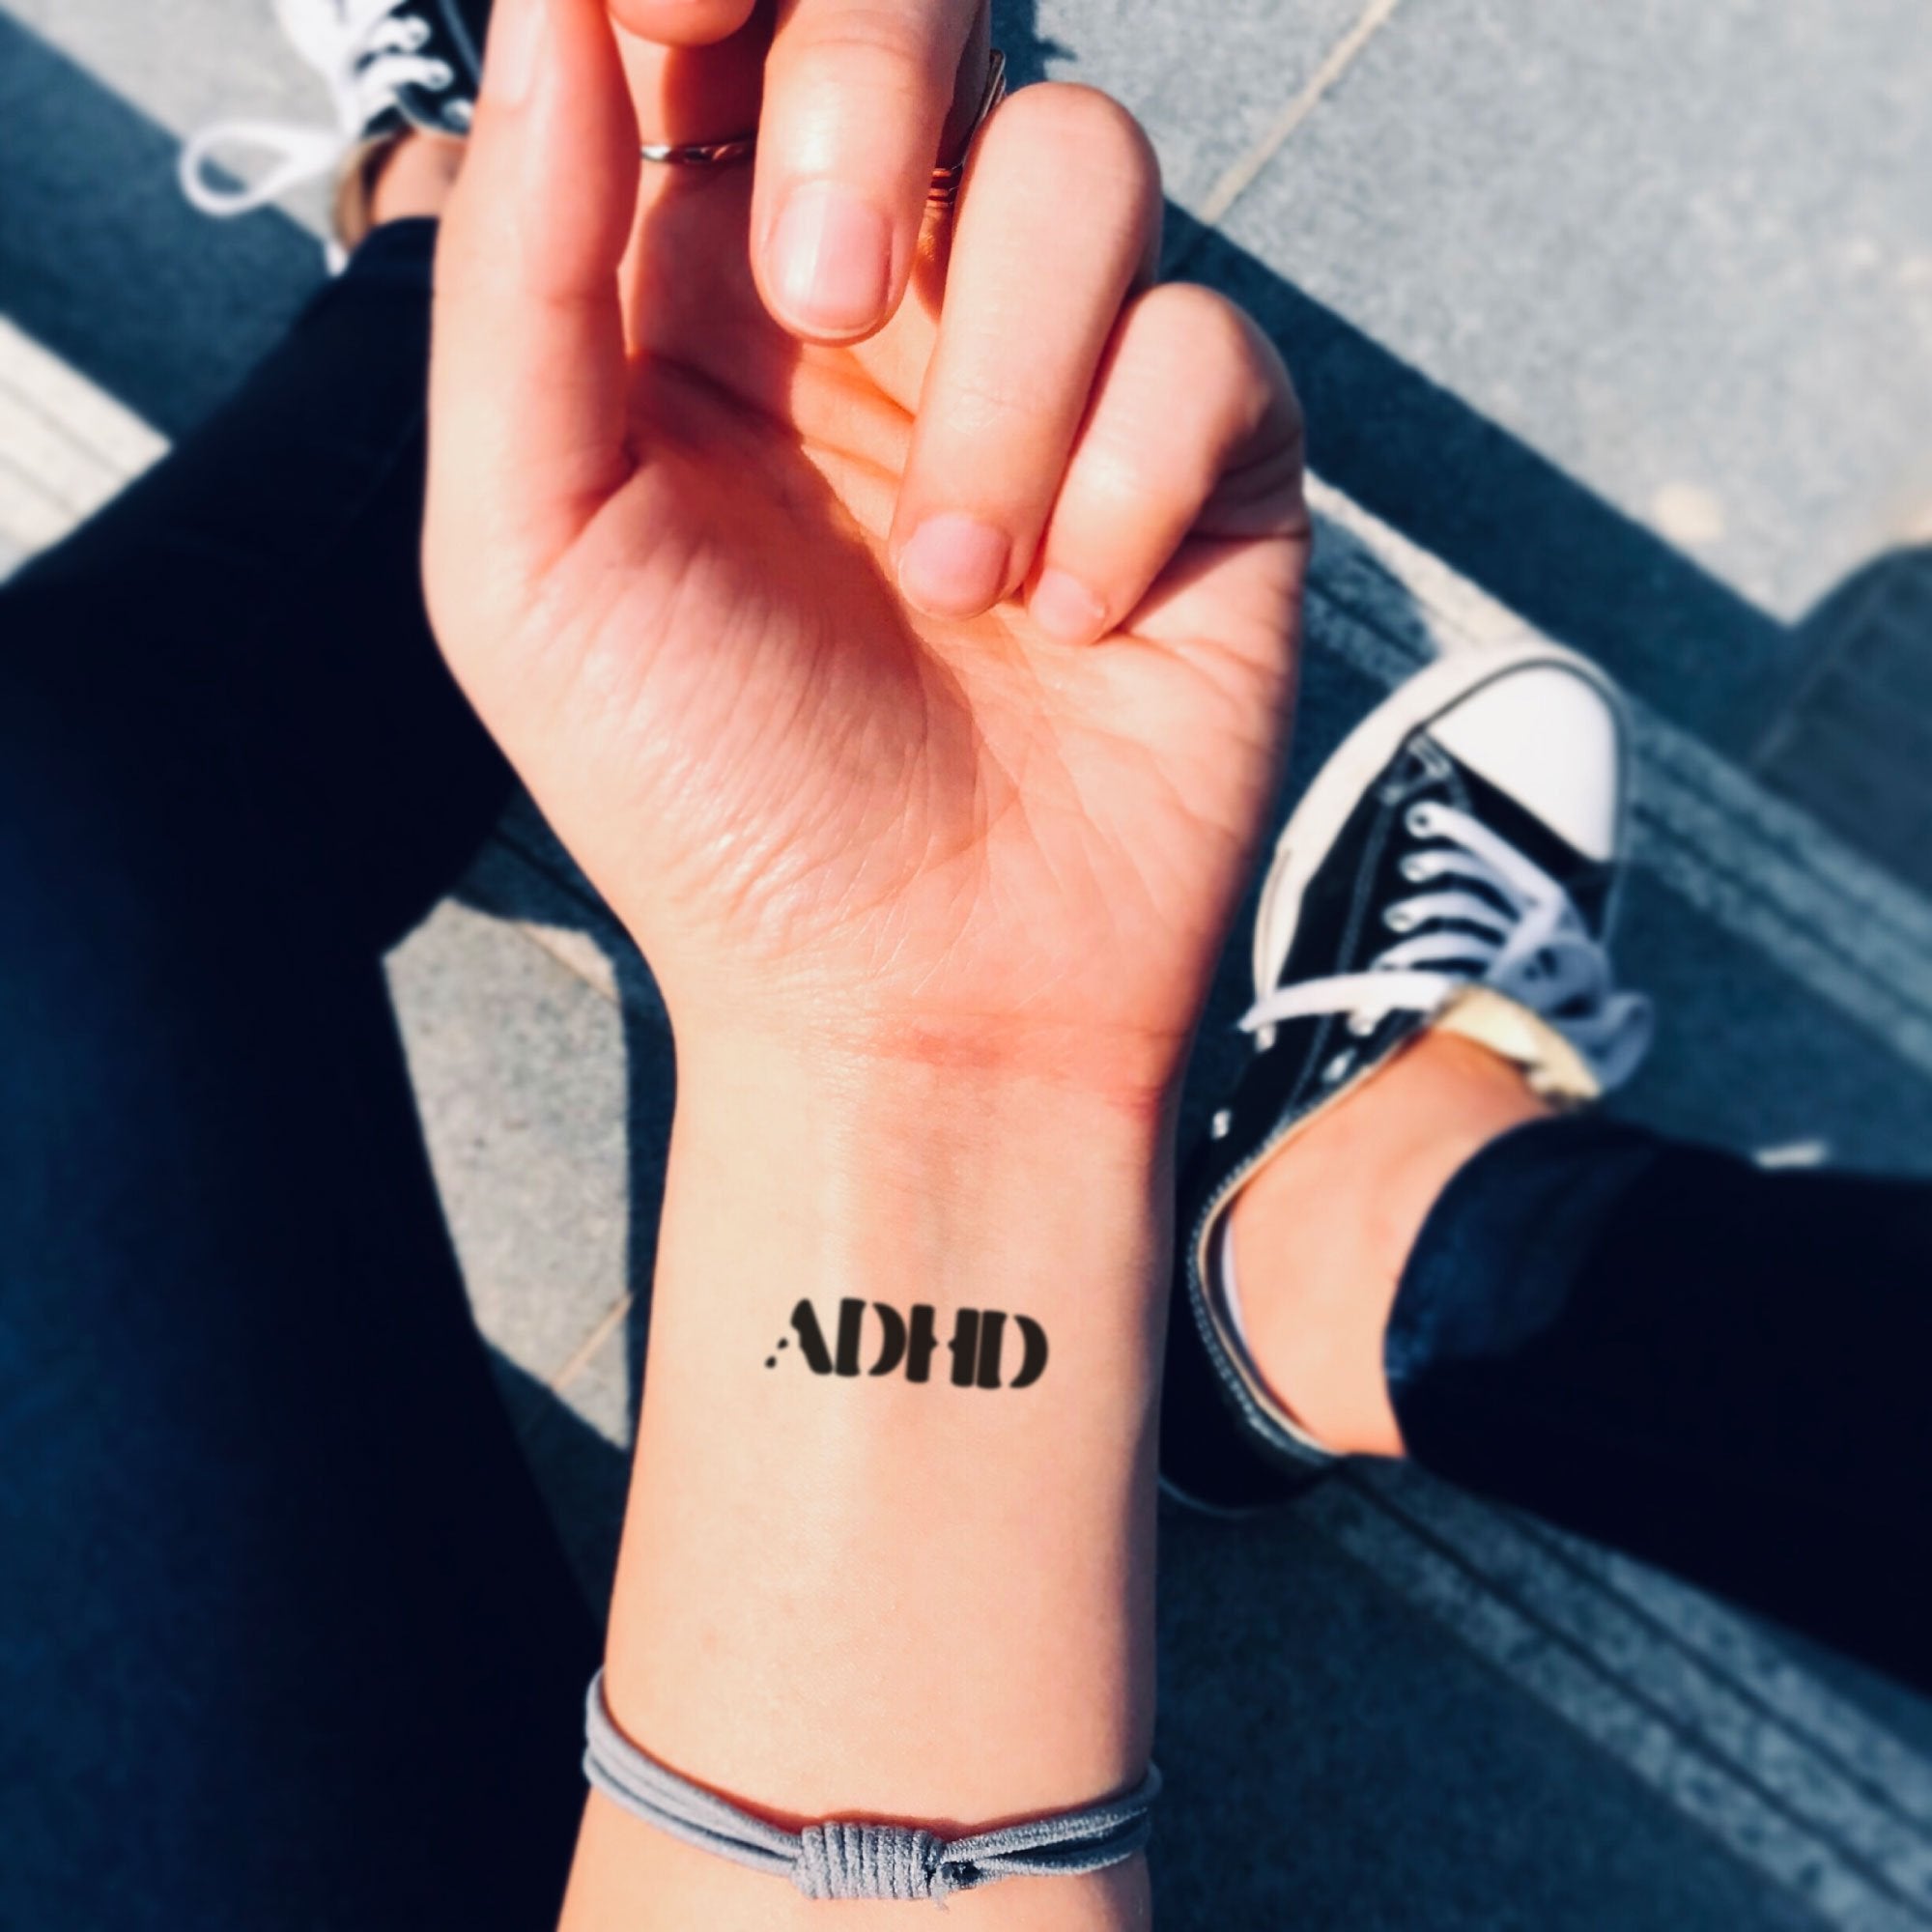 Adhd Temporary Tattoo Sticker - OhMyTat